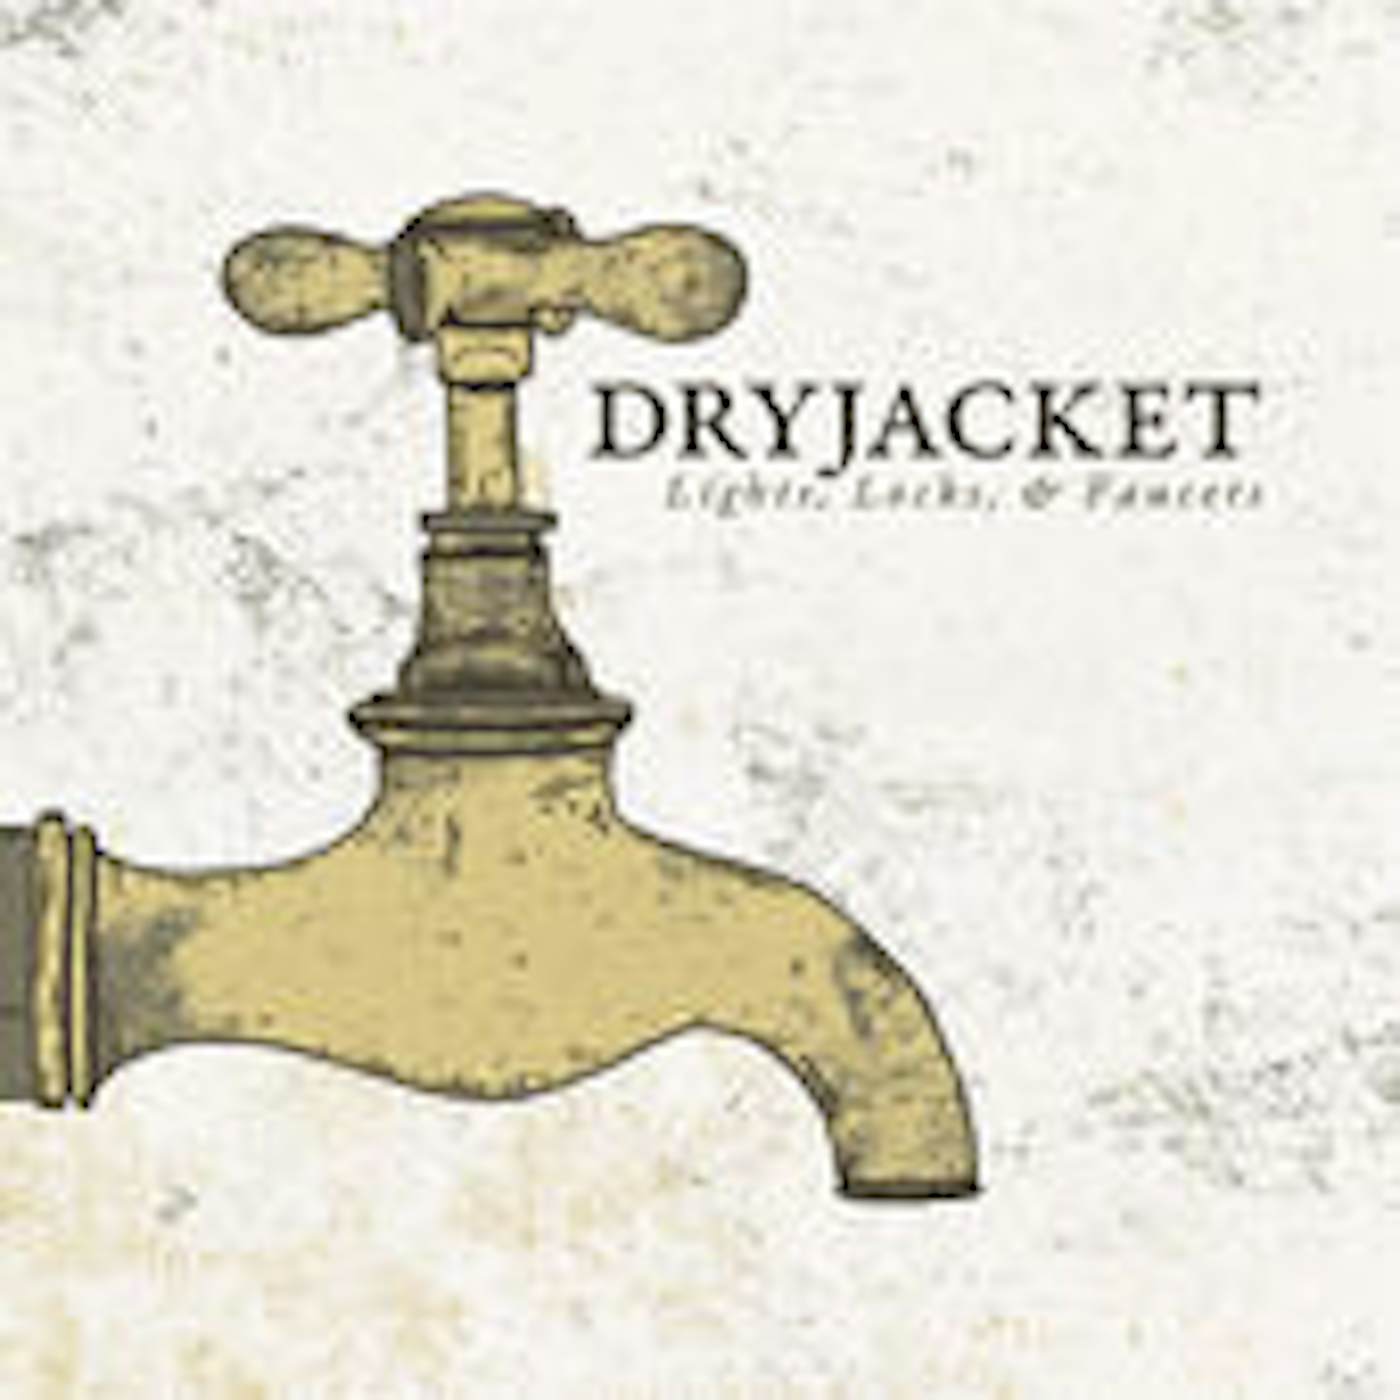 Dryjacket LIGHT LOCKS & FAUCETS CD